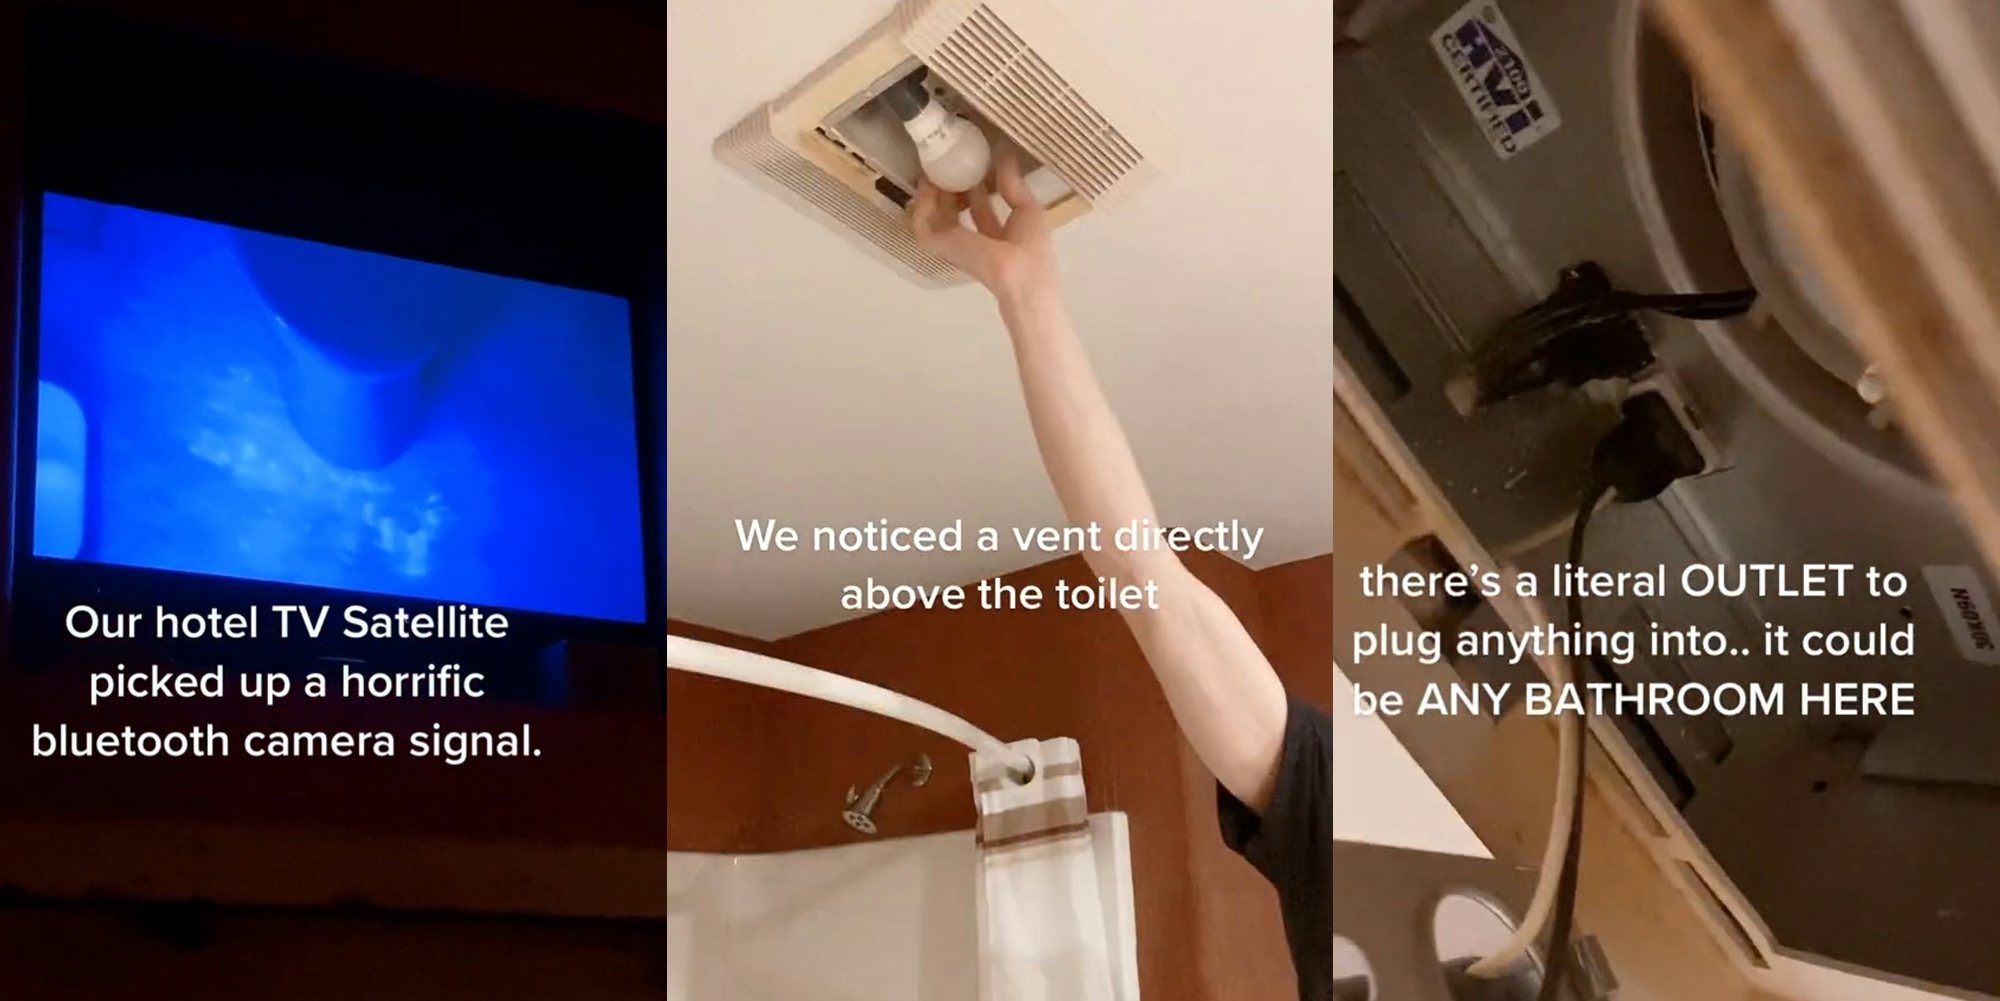 barbara jorgensen share hidden camera in shower room photos